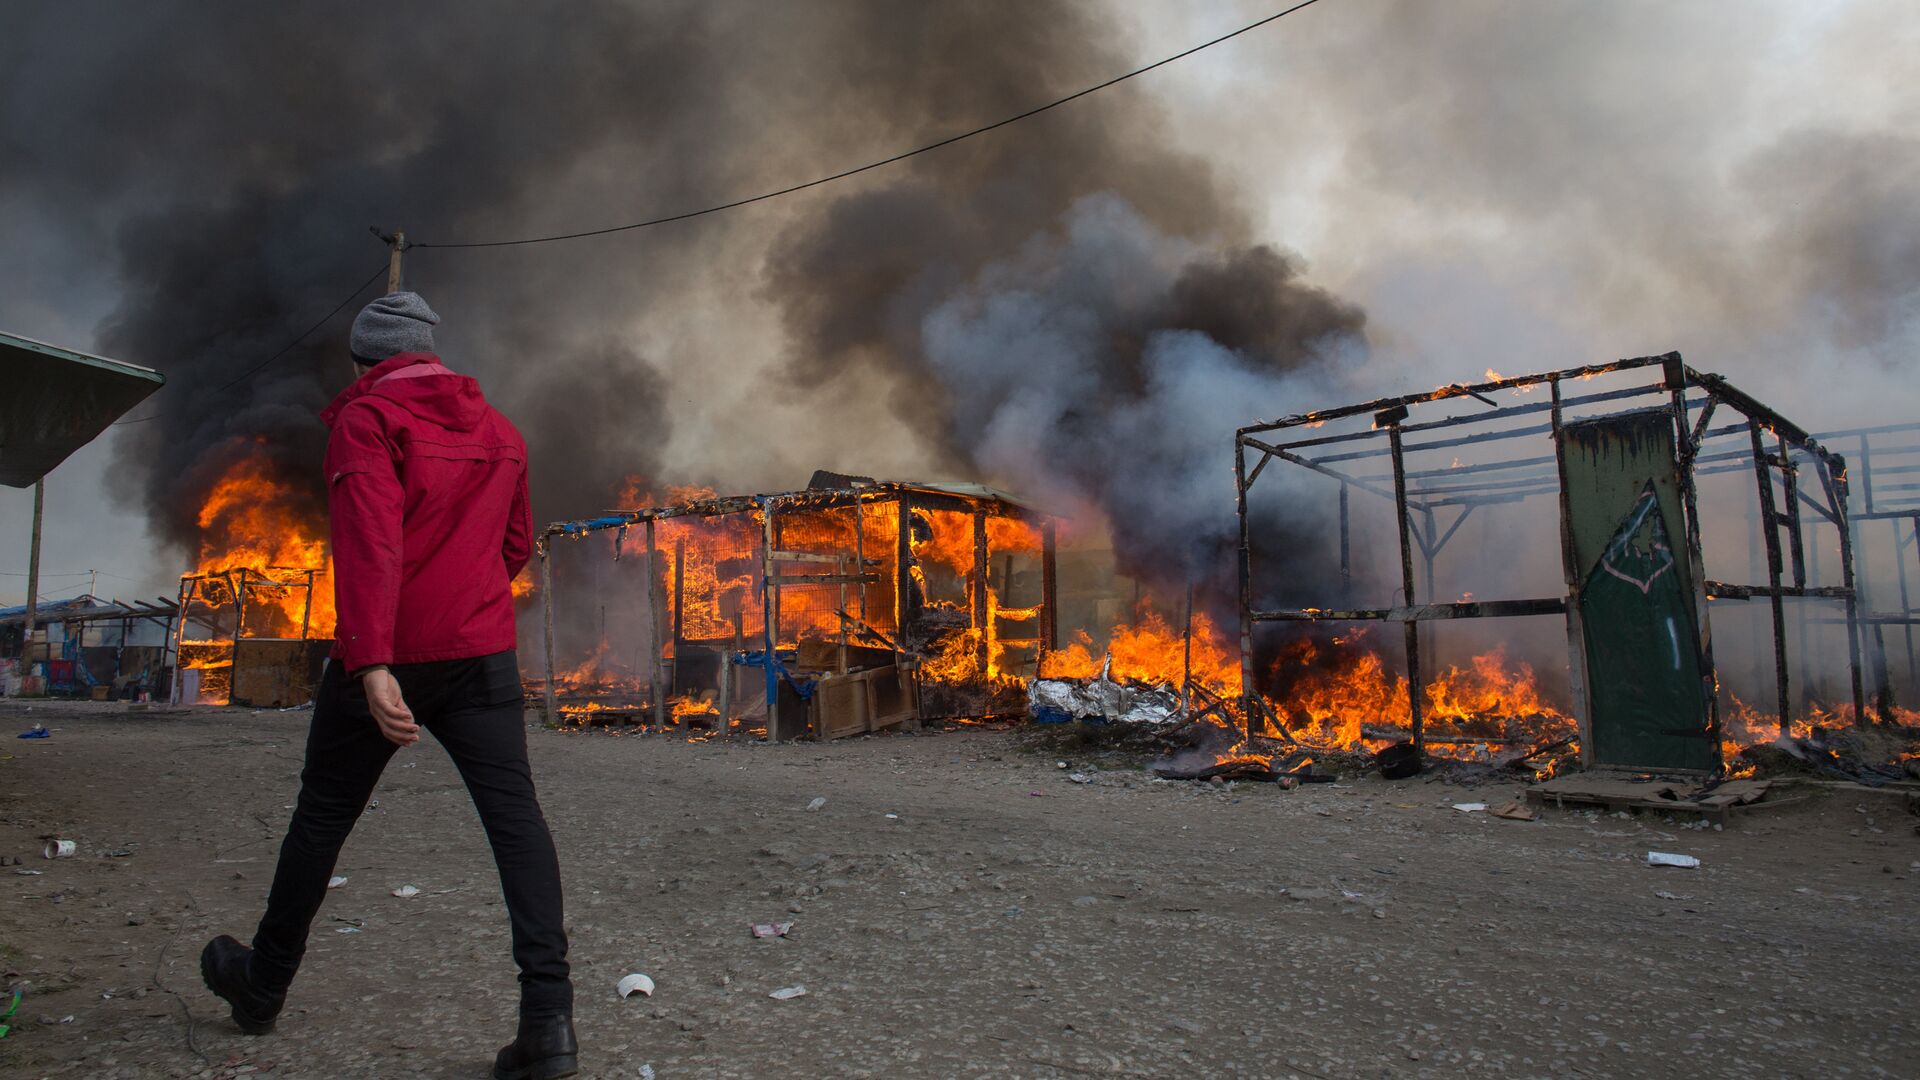 Пожар в лагере беженцев Джунгли в Кале во Франции, 26 октября 2016 года - РИА Новости, 1920, 12.12.2022